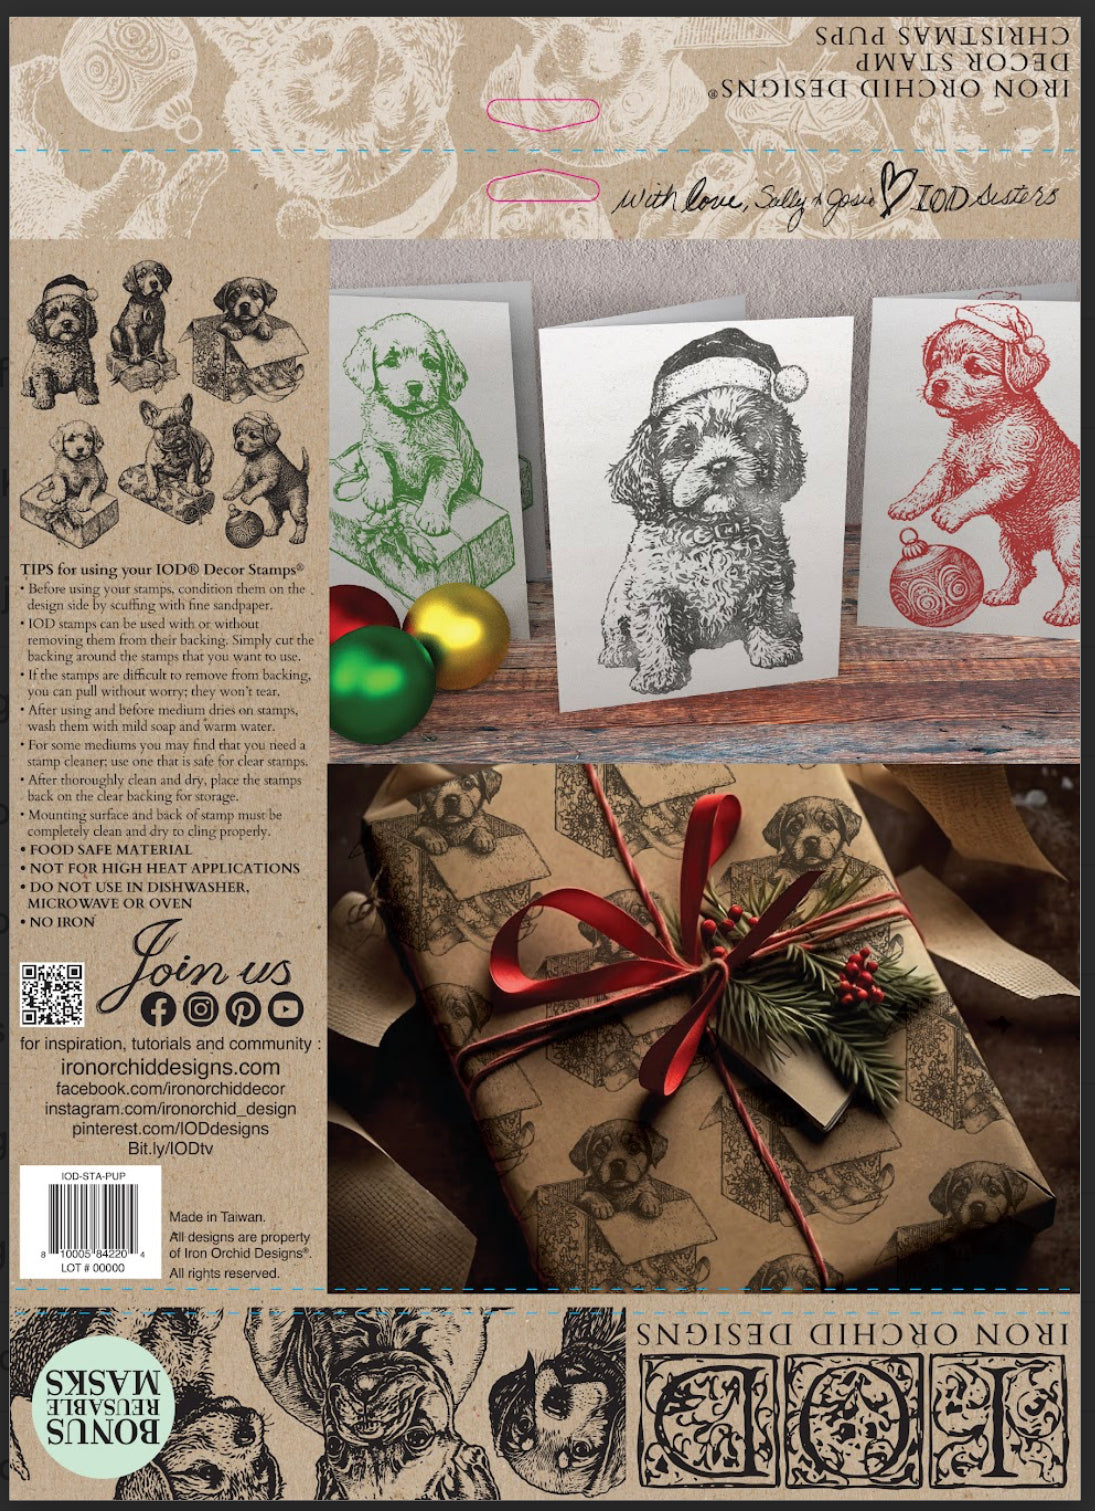 Christmas Pups Stamp